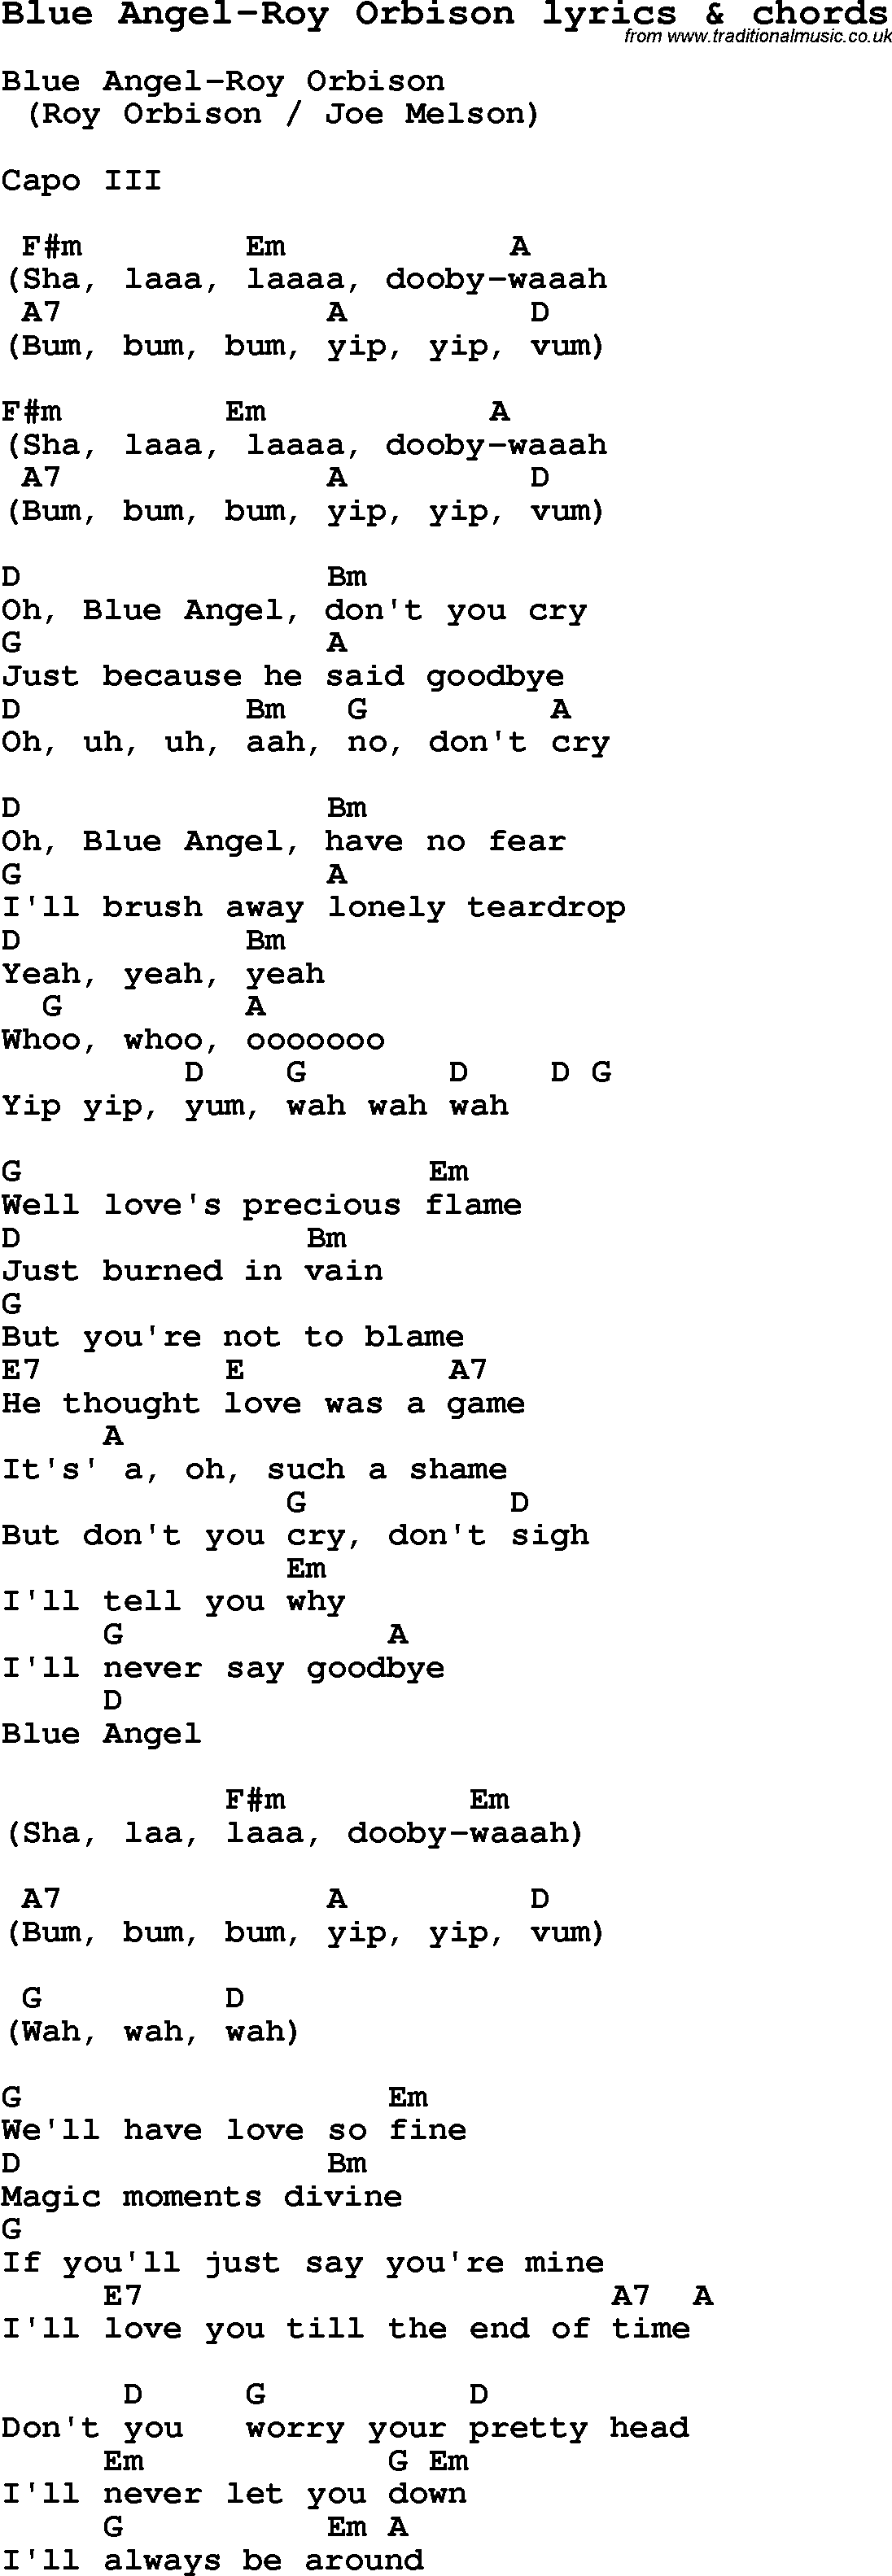 Love Song Lyrics for: Blue Angel-Roy Orbison with chords for Ukulele, Guitar Banjo etc.